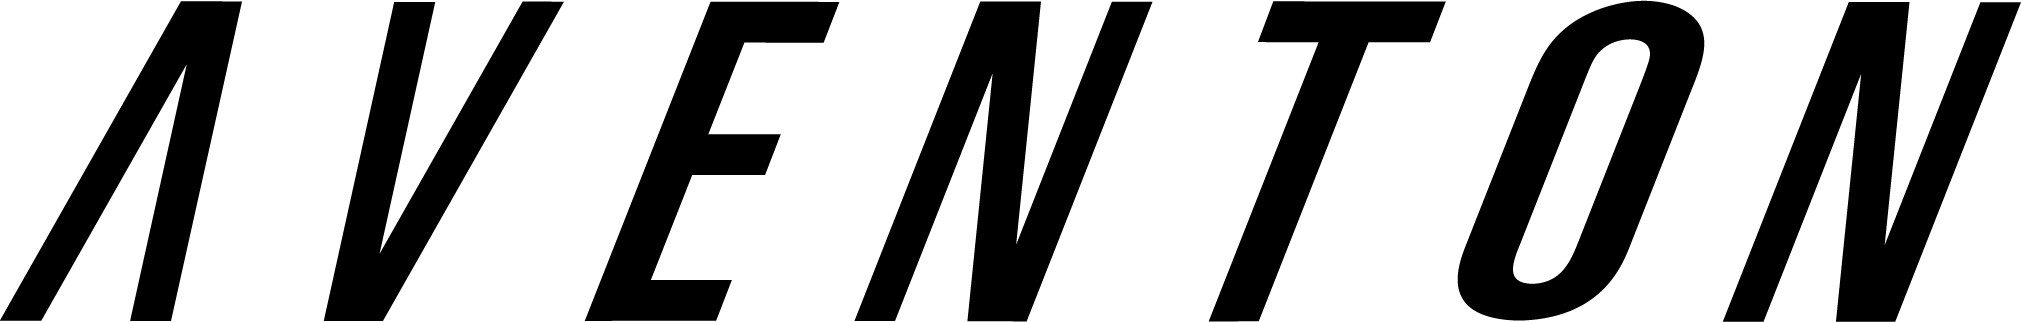 logo for Aventon brand